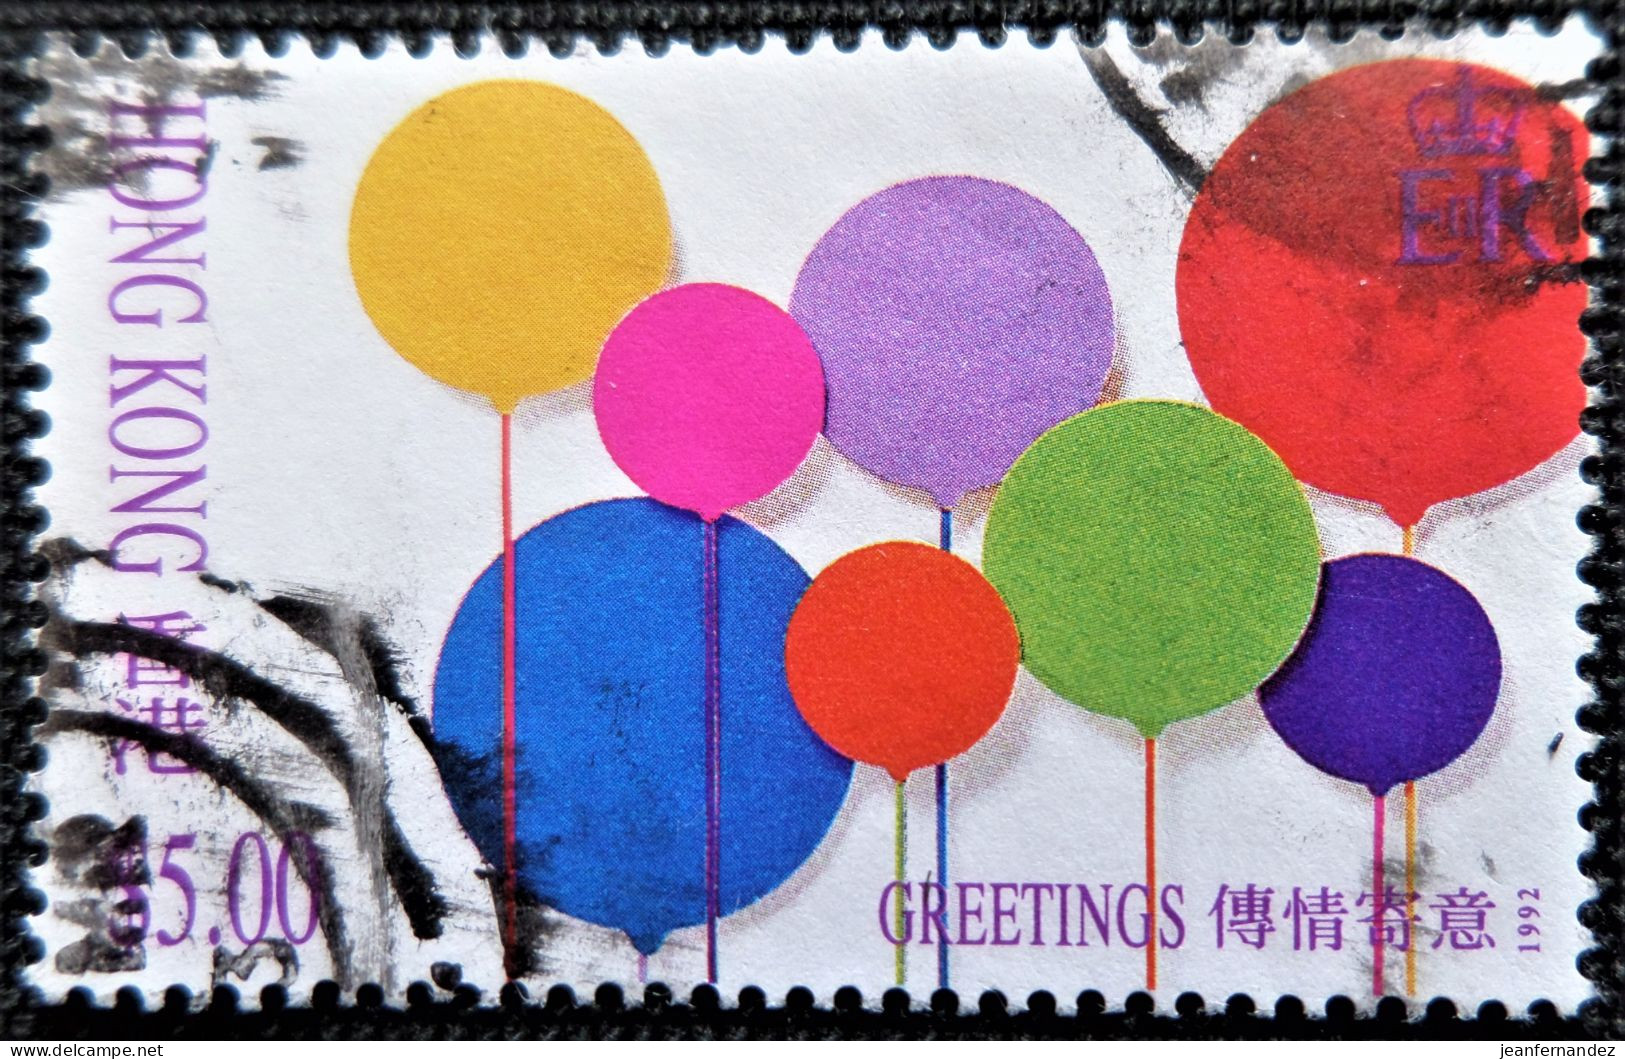 Grande-Bretagne (ex-colonies & Protectorats) > Hong Kong 1992 Greetings Stamp  Stampworld N° 689 - Gebruikt